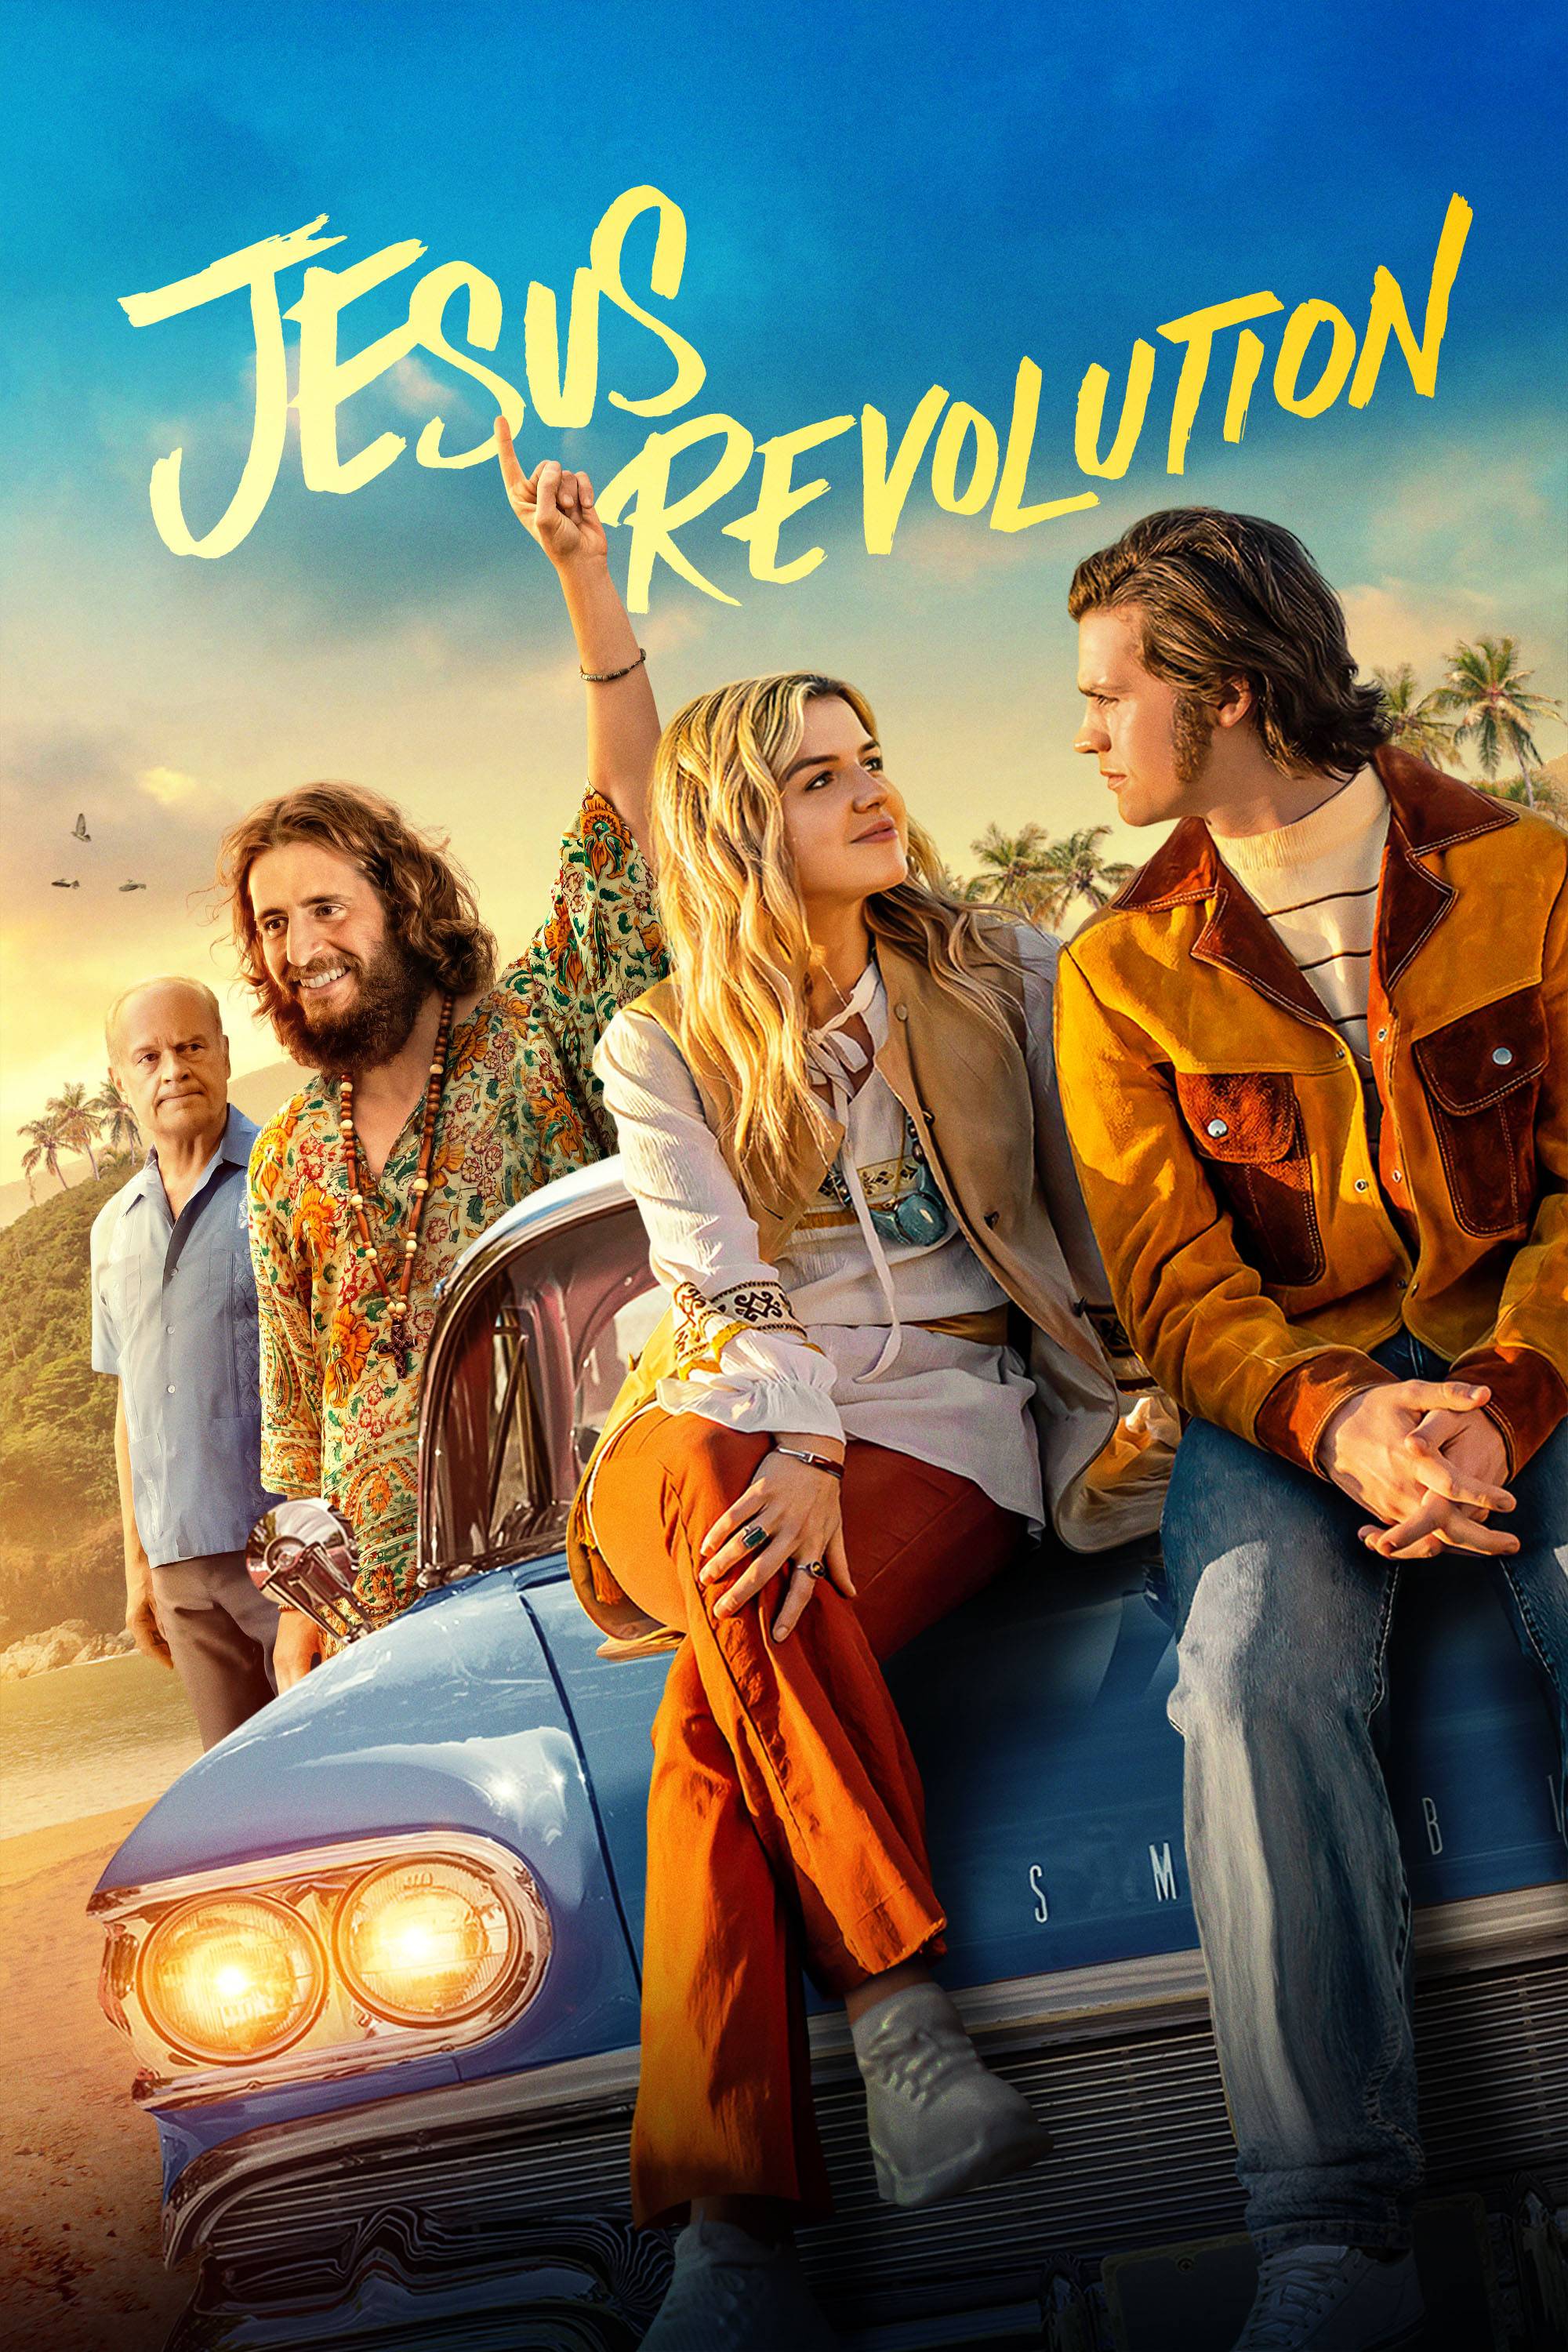 catholic movie review jesus revolution